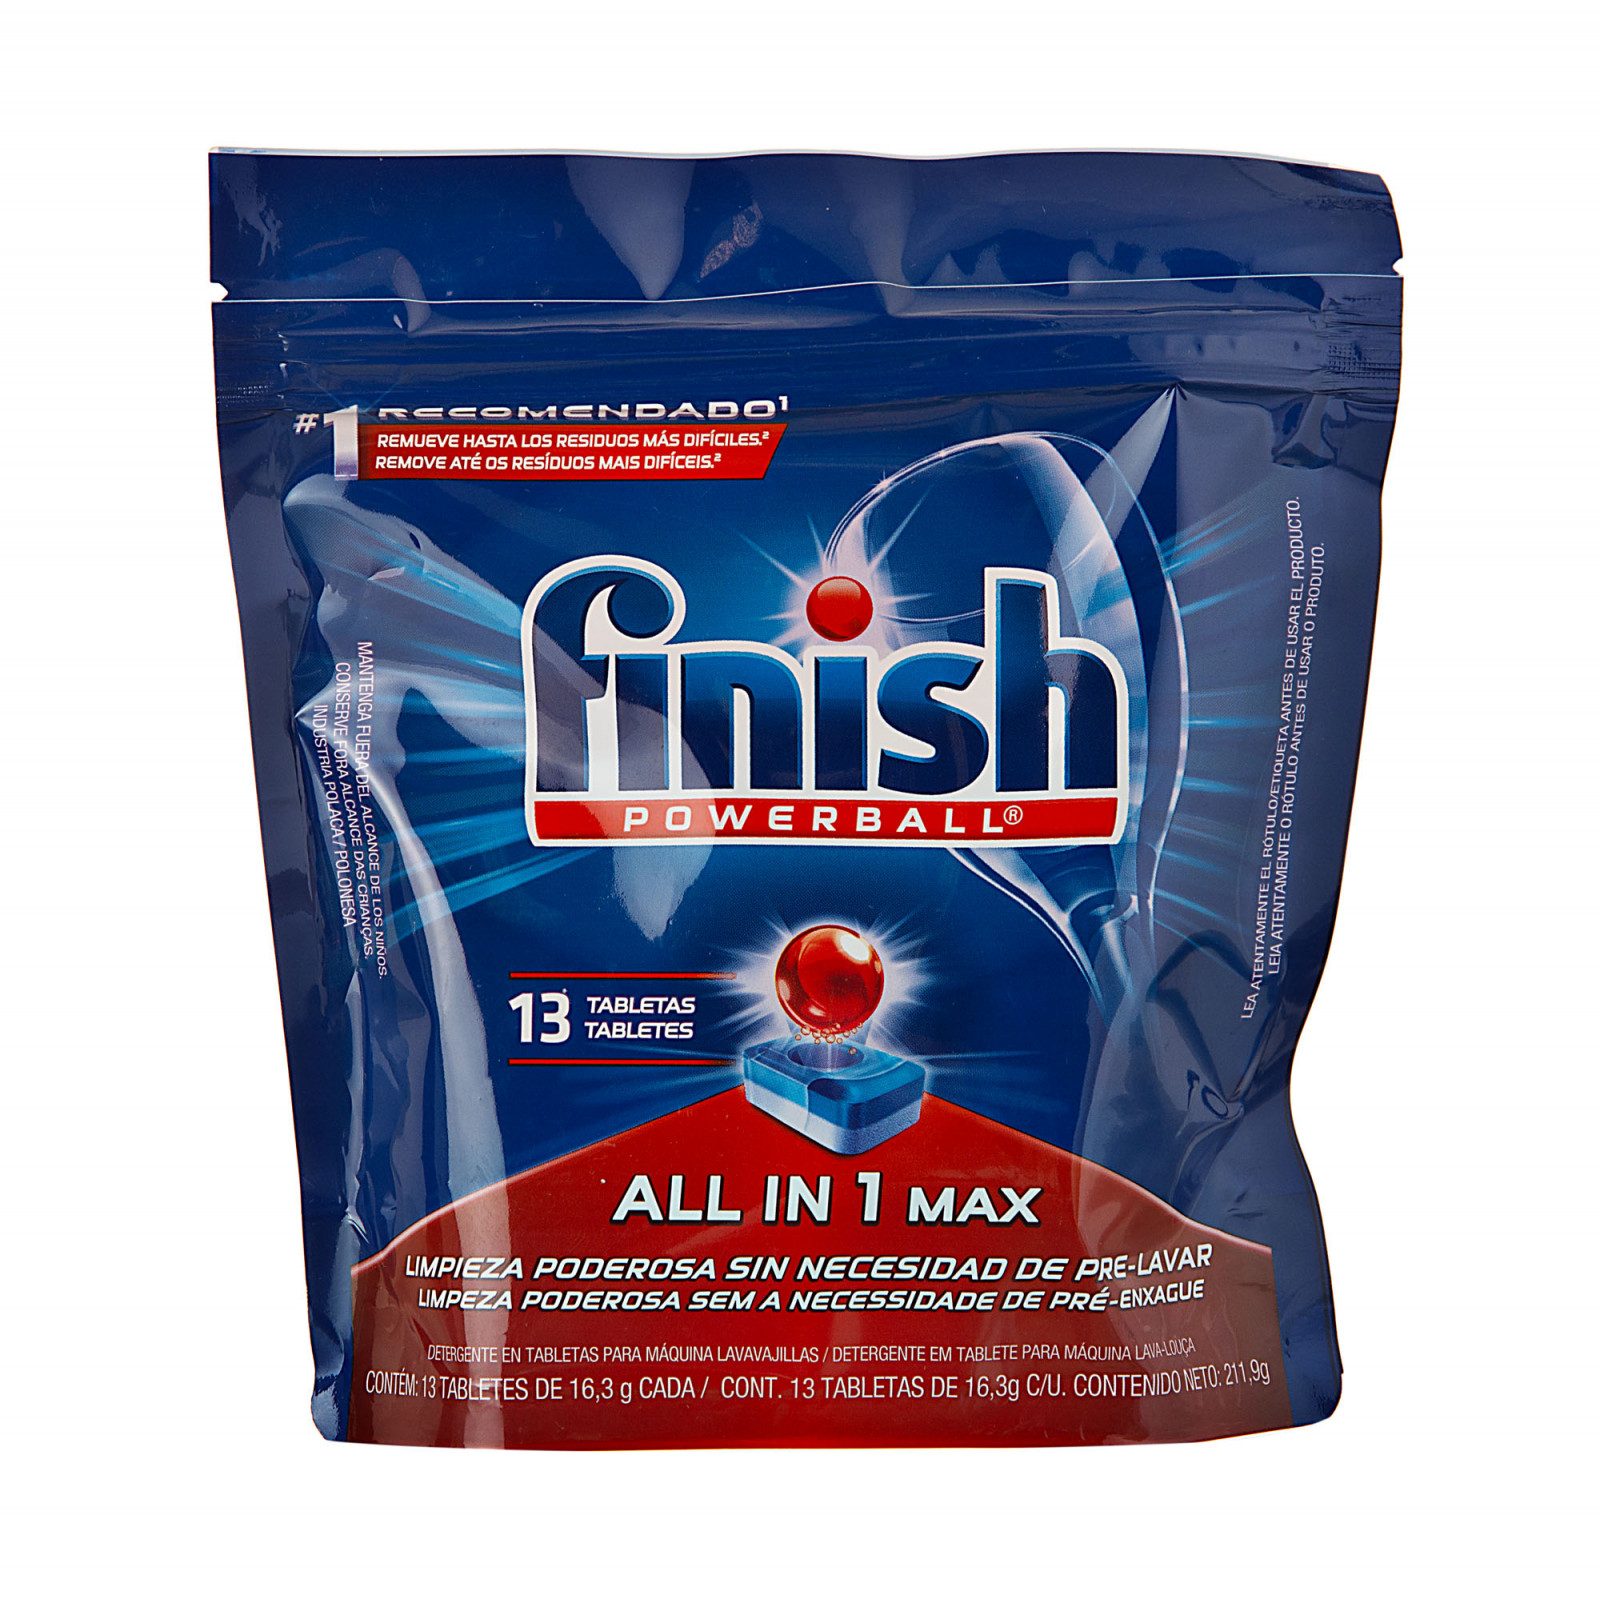 Finish® Pastillas Limpia Máquinas Lavavajillas